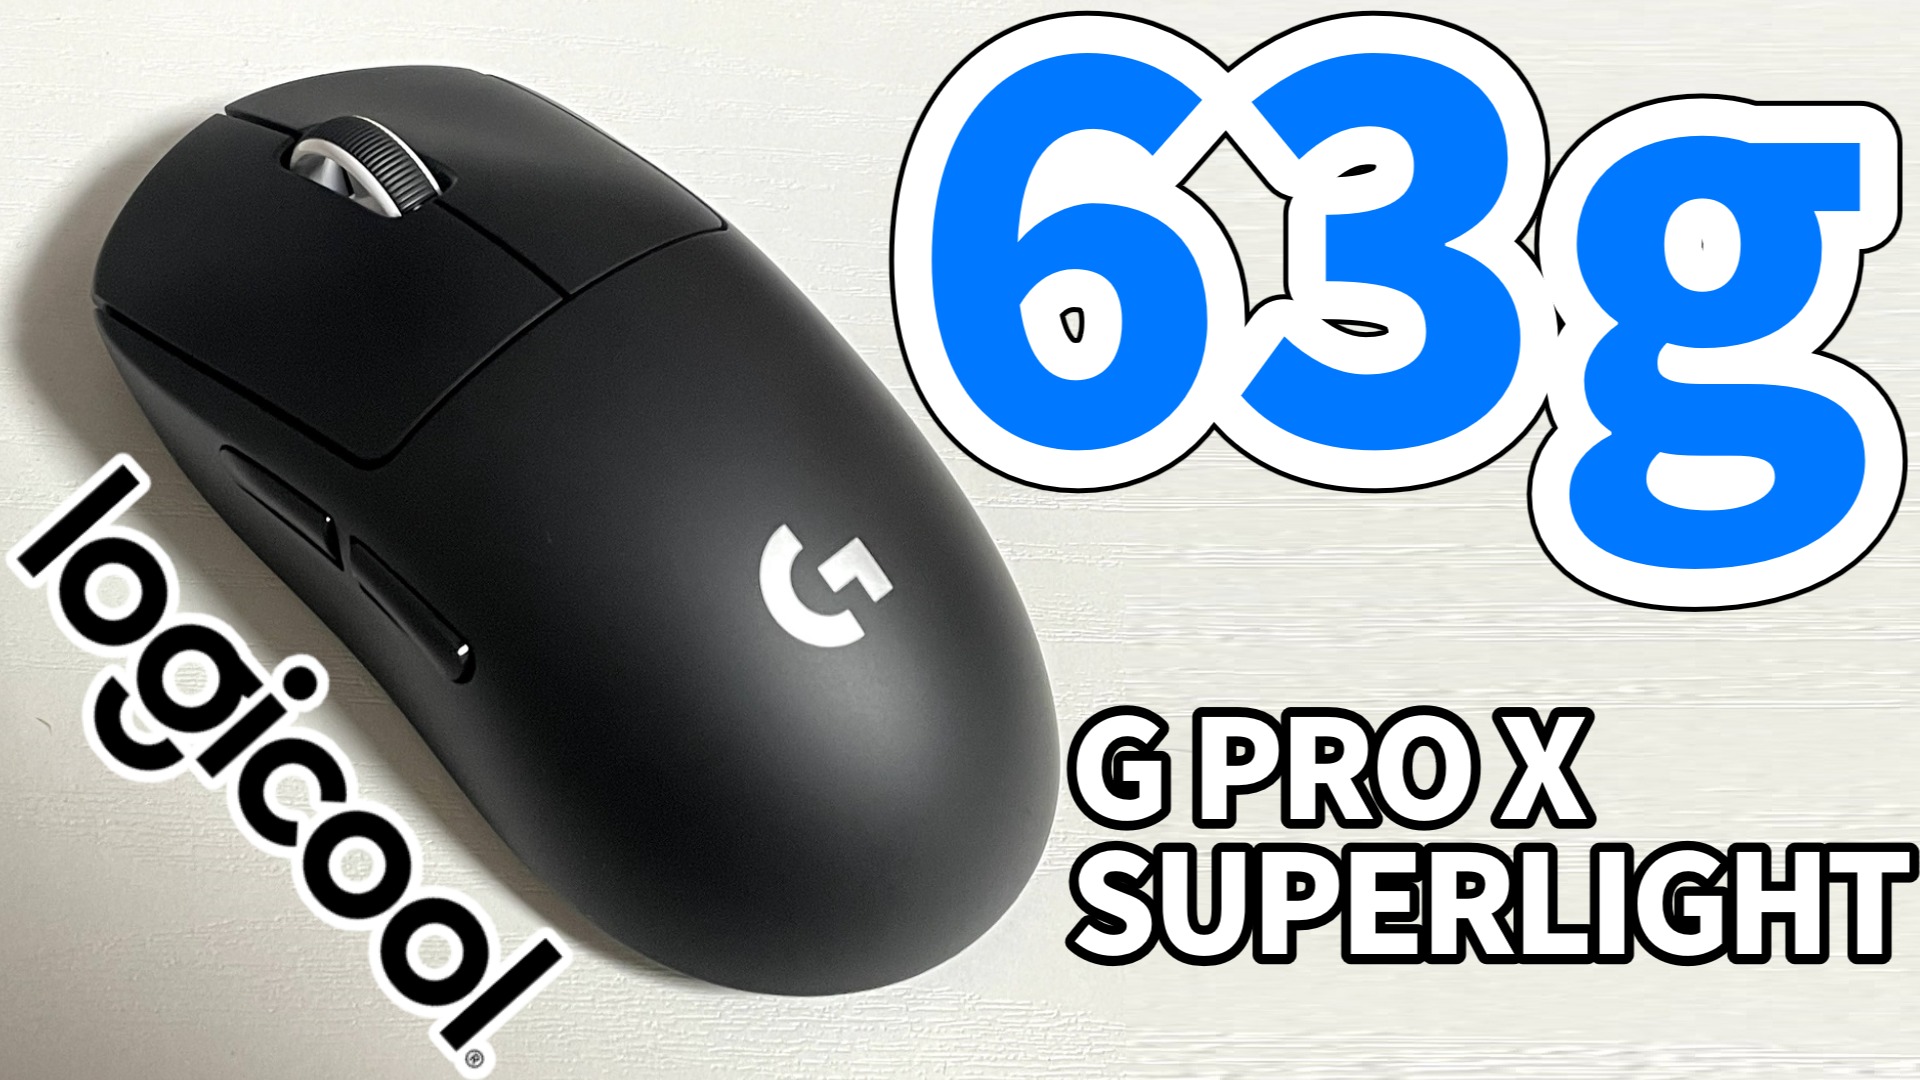 Logicool G PRO X SUPERLIGHTレビュー:無線なのに有線より軽いゲーミングワイヤレスマウス